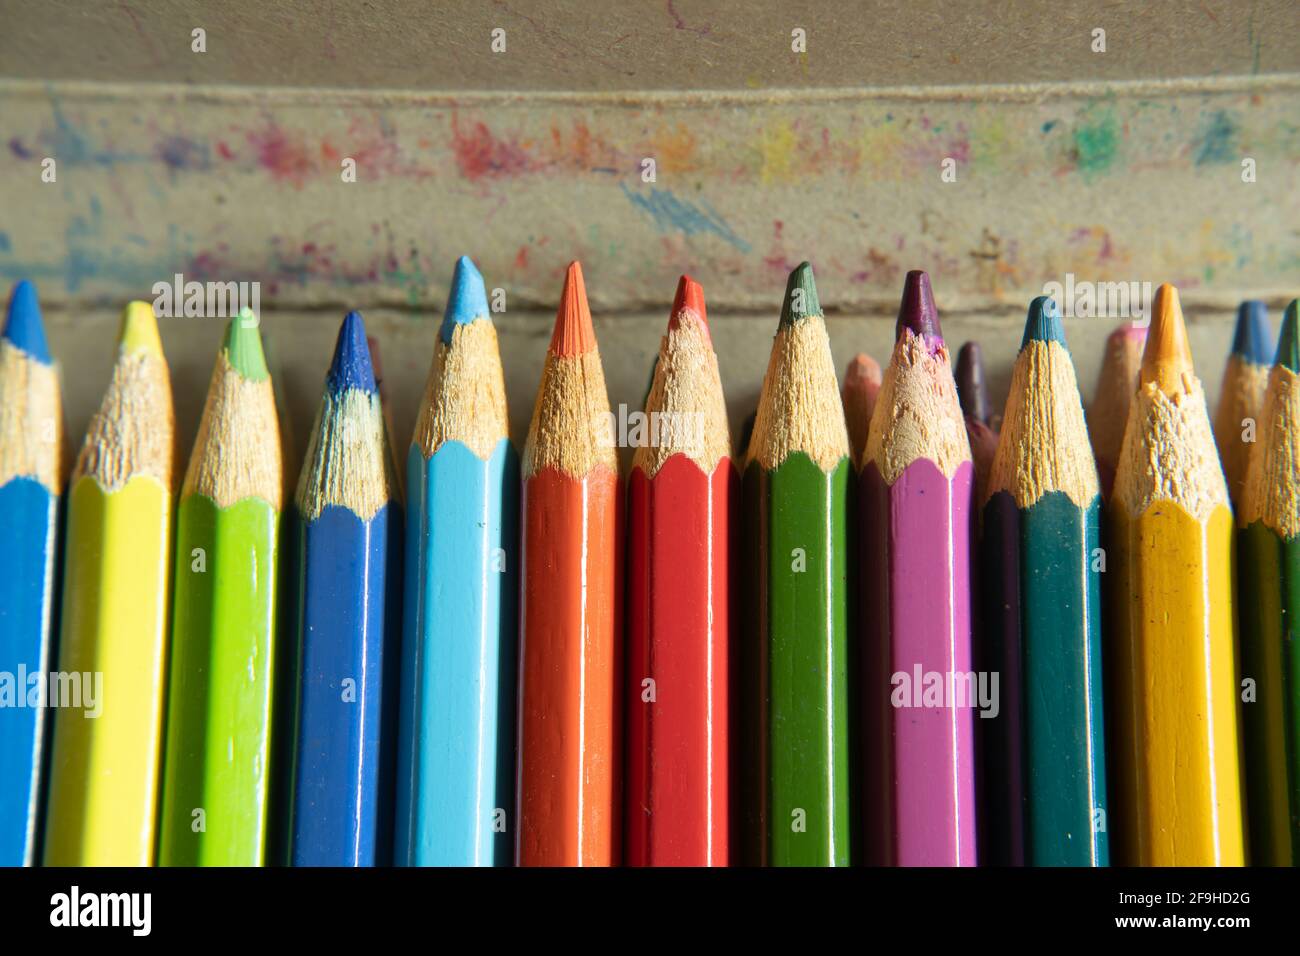 Composición De Lápices De Colores Con Lápices De Colores Para Niños. Foto  de archivo - Imagen de blanco, pluma: 212403306